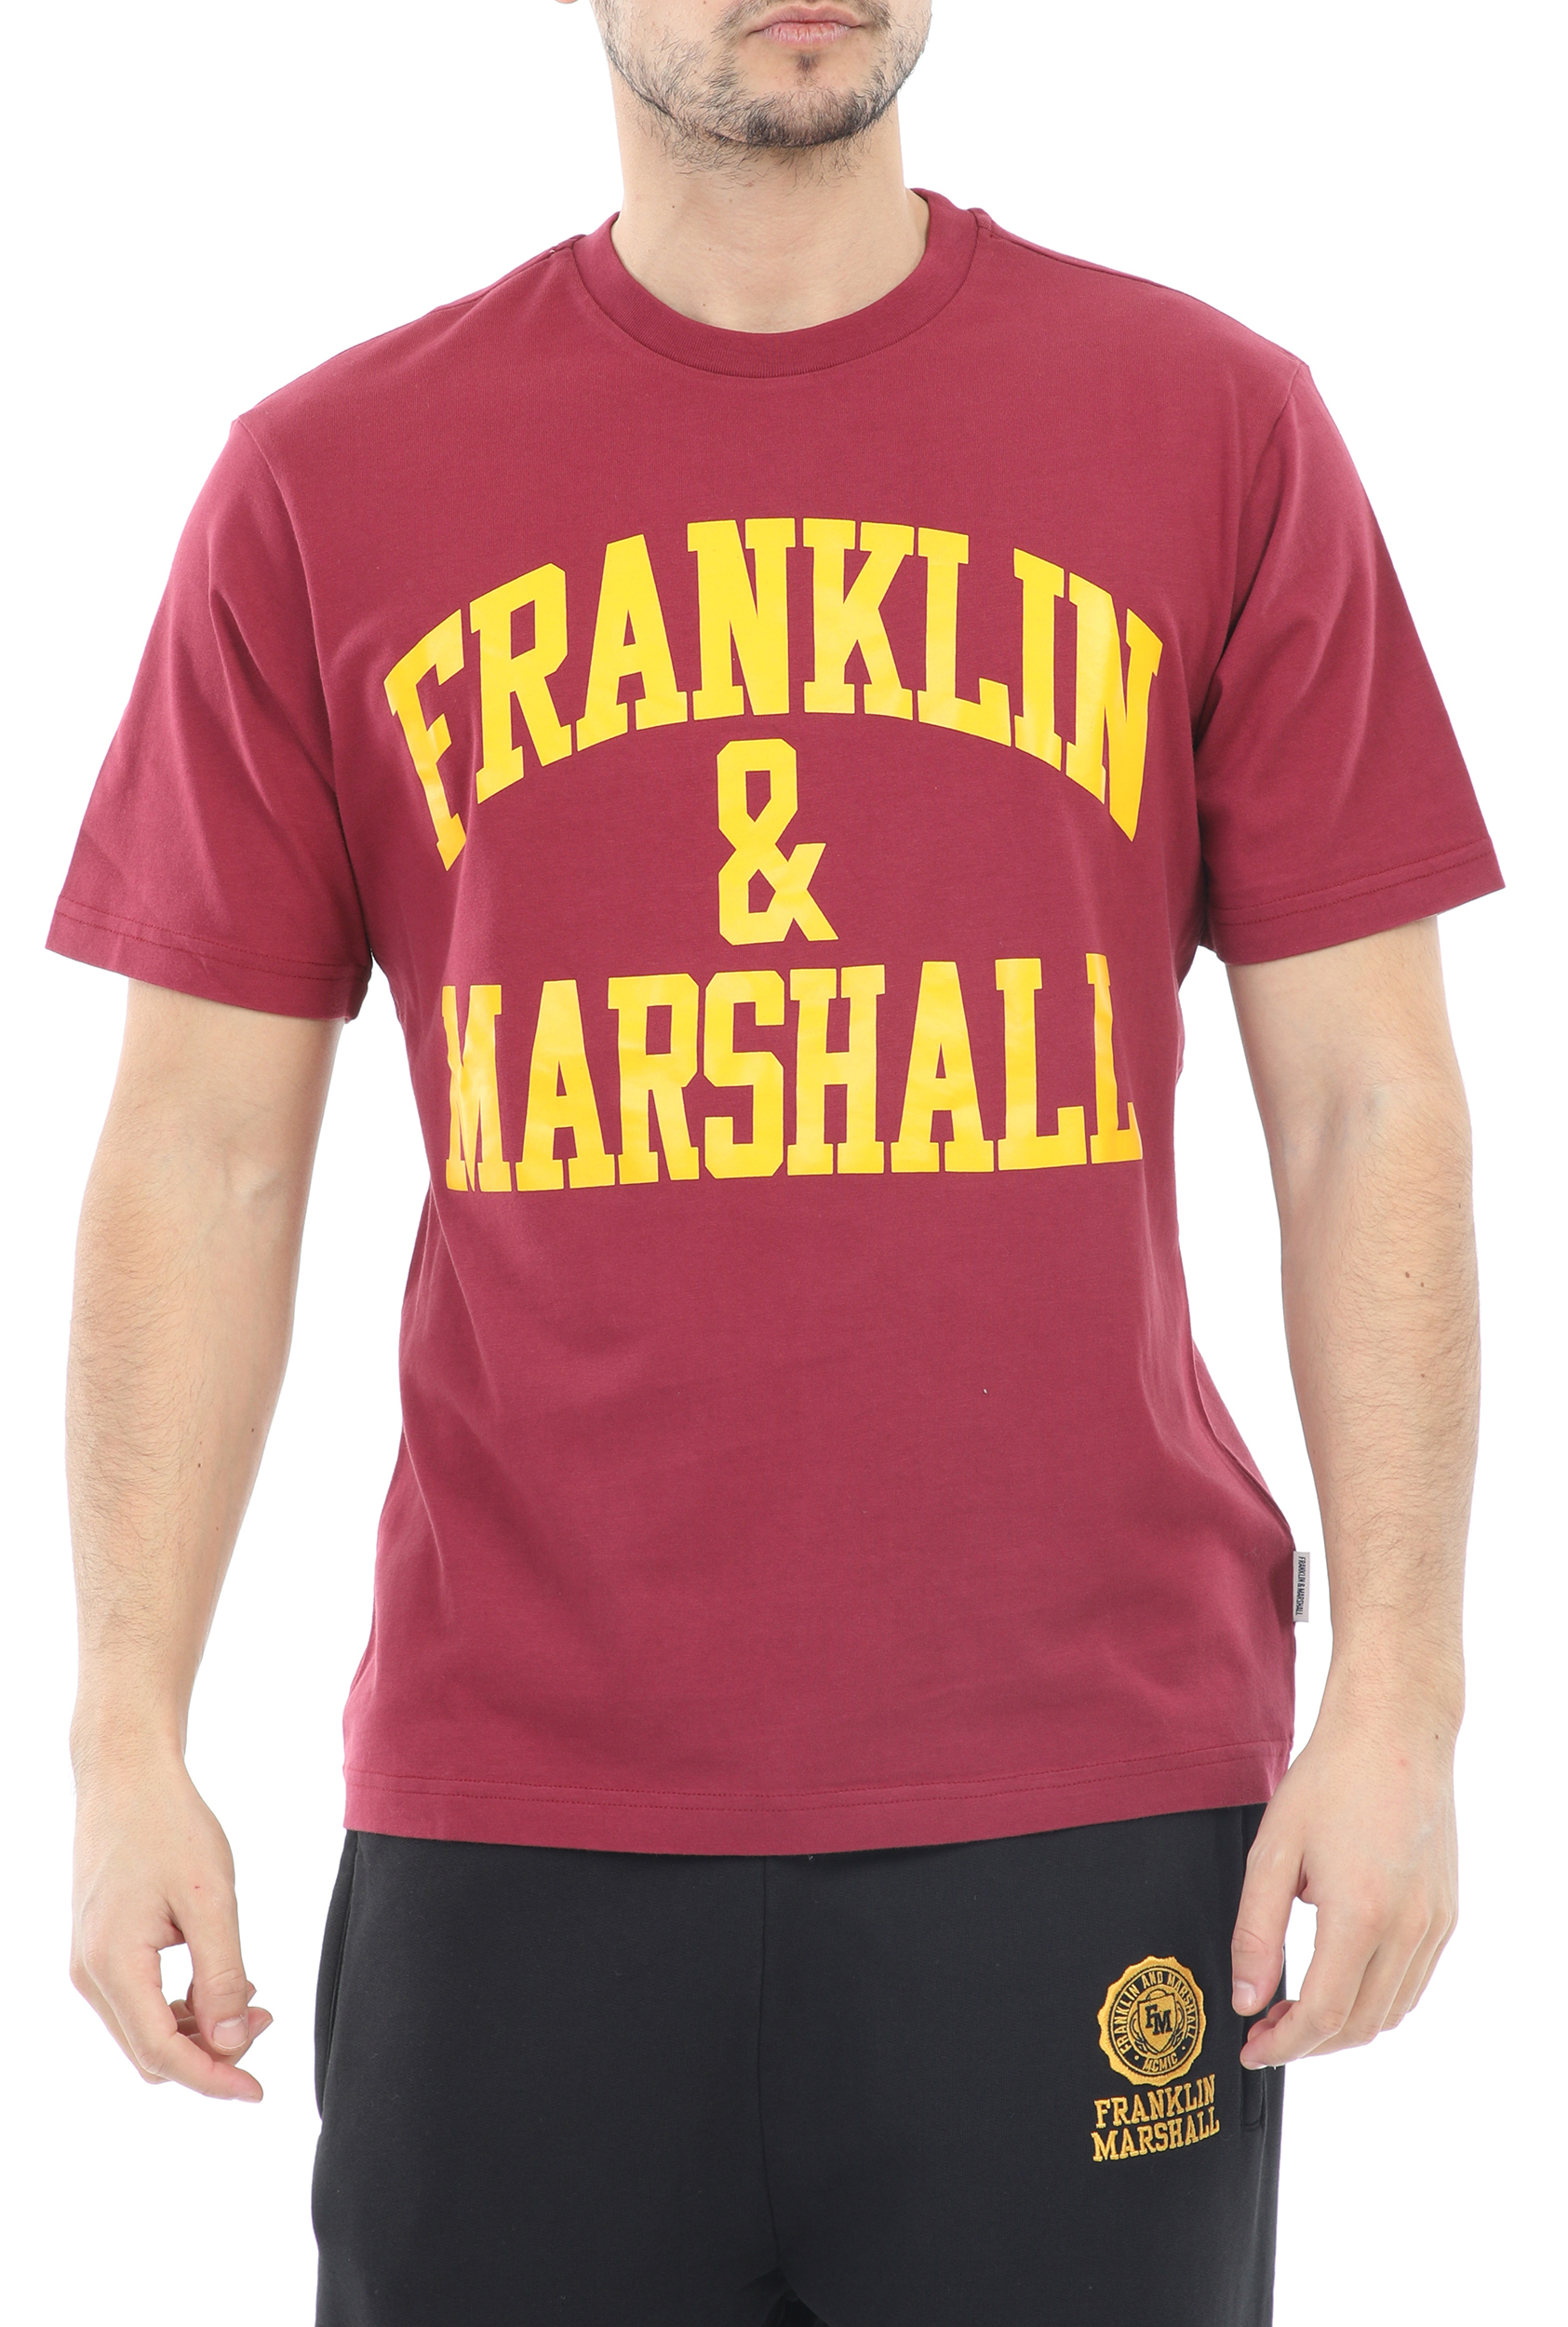 Ανδρικά/Ρούχα/Μπλούζες/Κοντομάνικες FRANKLIN & MARSHALL - Ανδρικό t-shirt FRANKLIN & MARSHALL 20/1 JERSEY κόκκινο